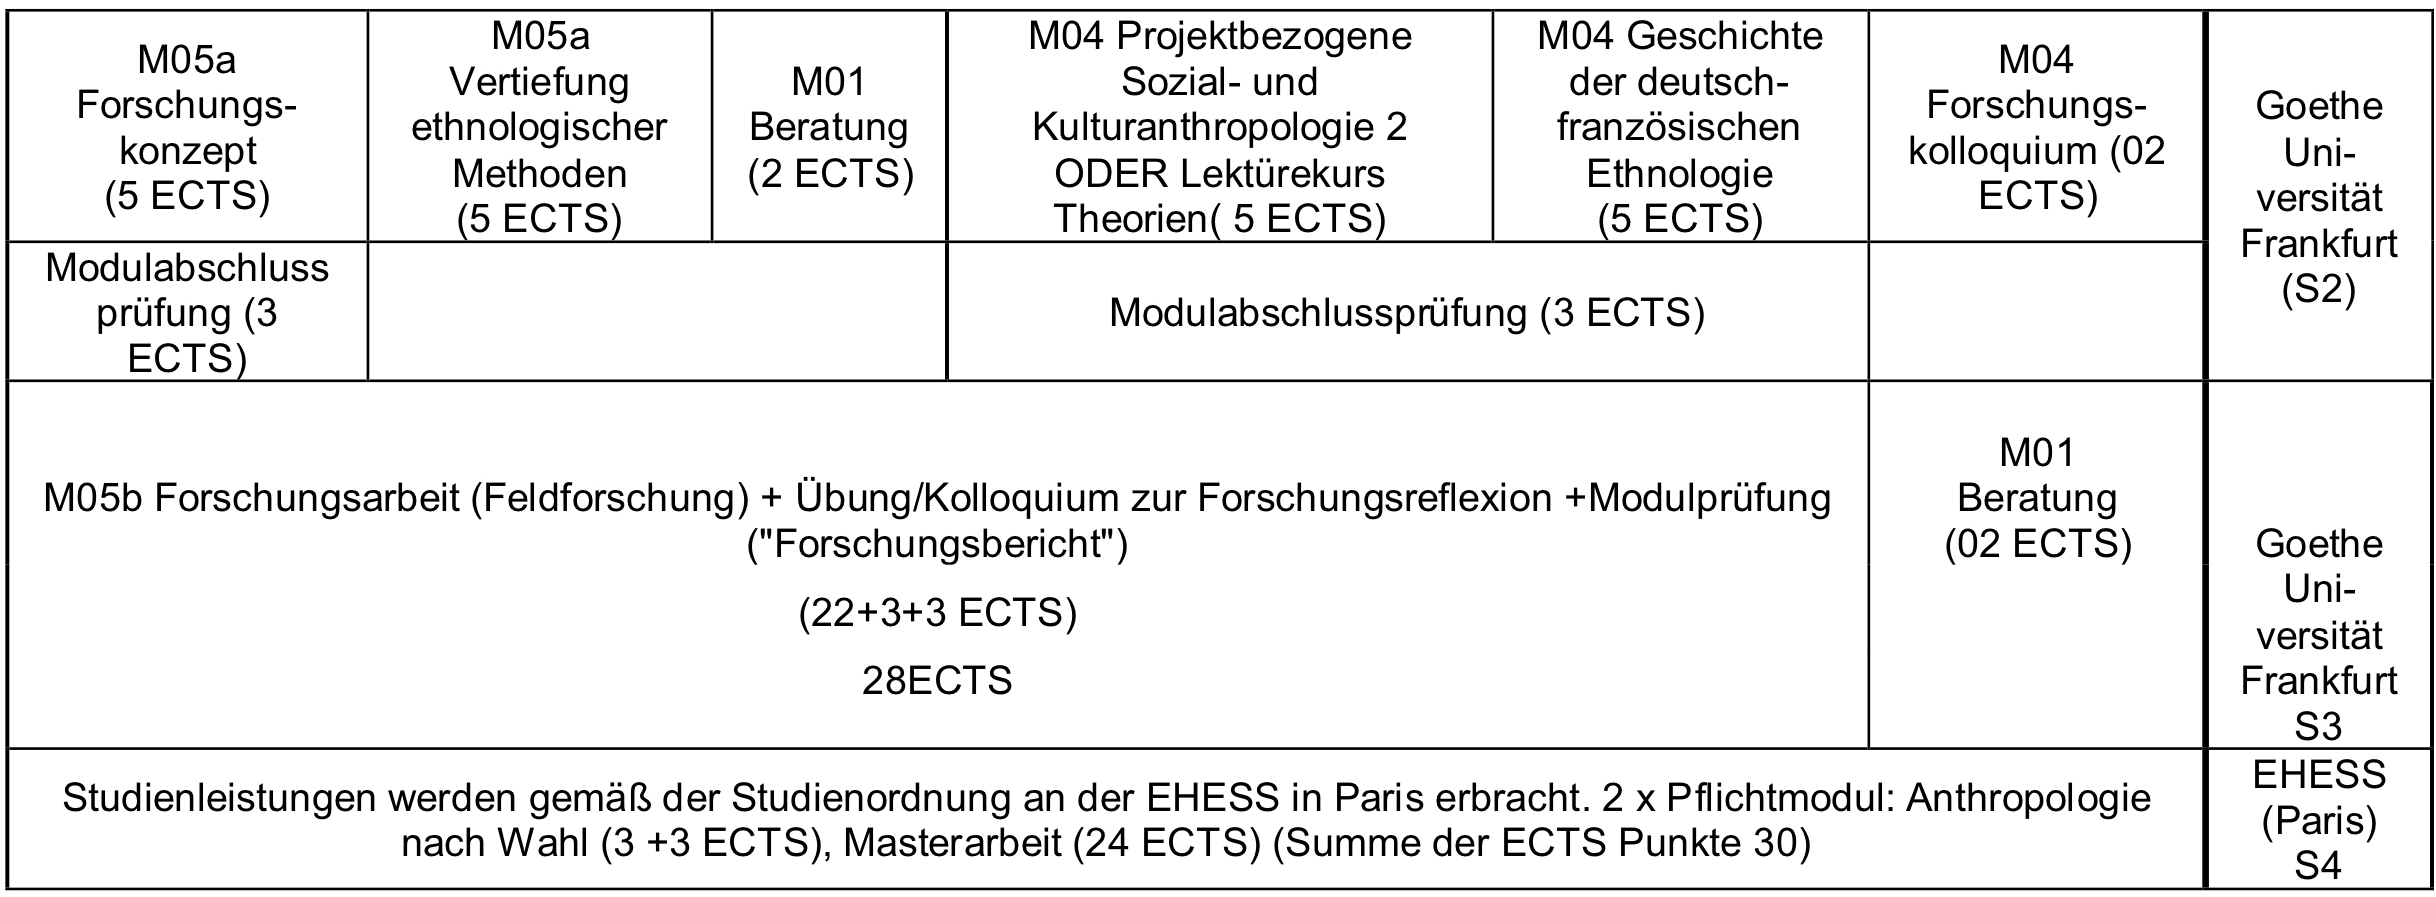 Goethe Universitat Deutsch Franz Ma Ethnologie Po 2019 Studienbeginn Nach Wise 19 20